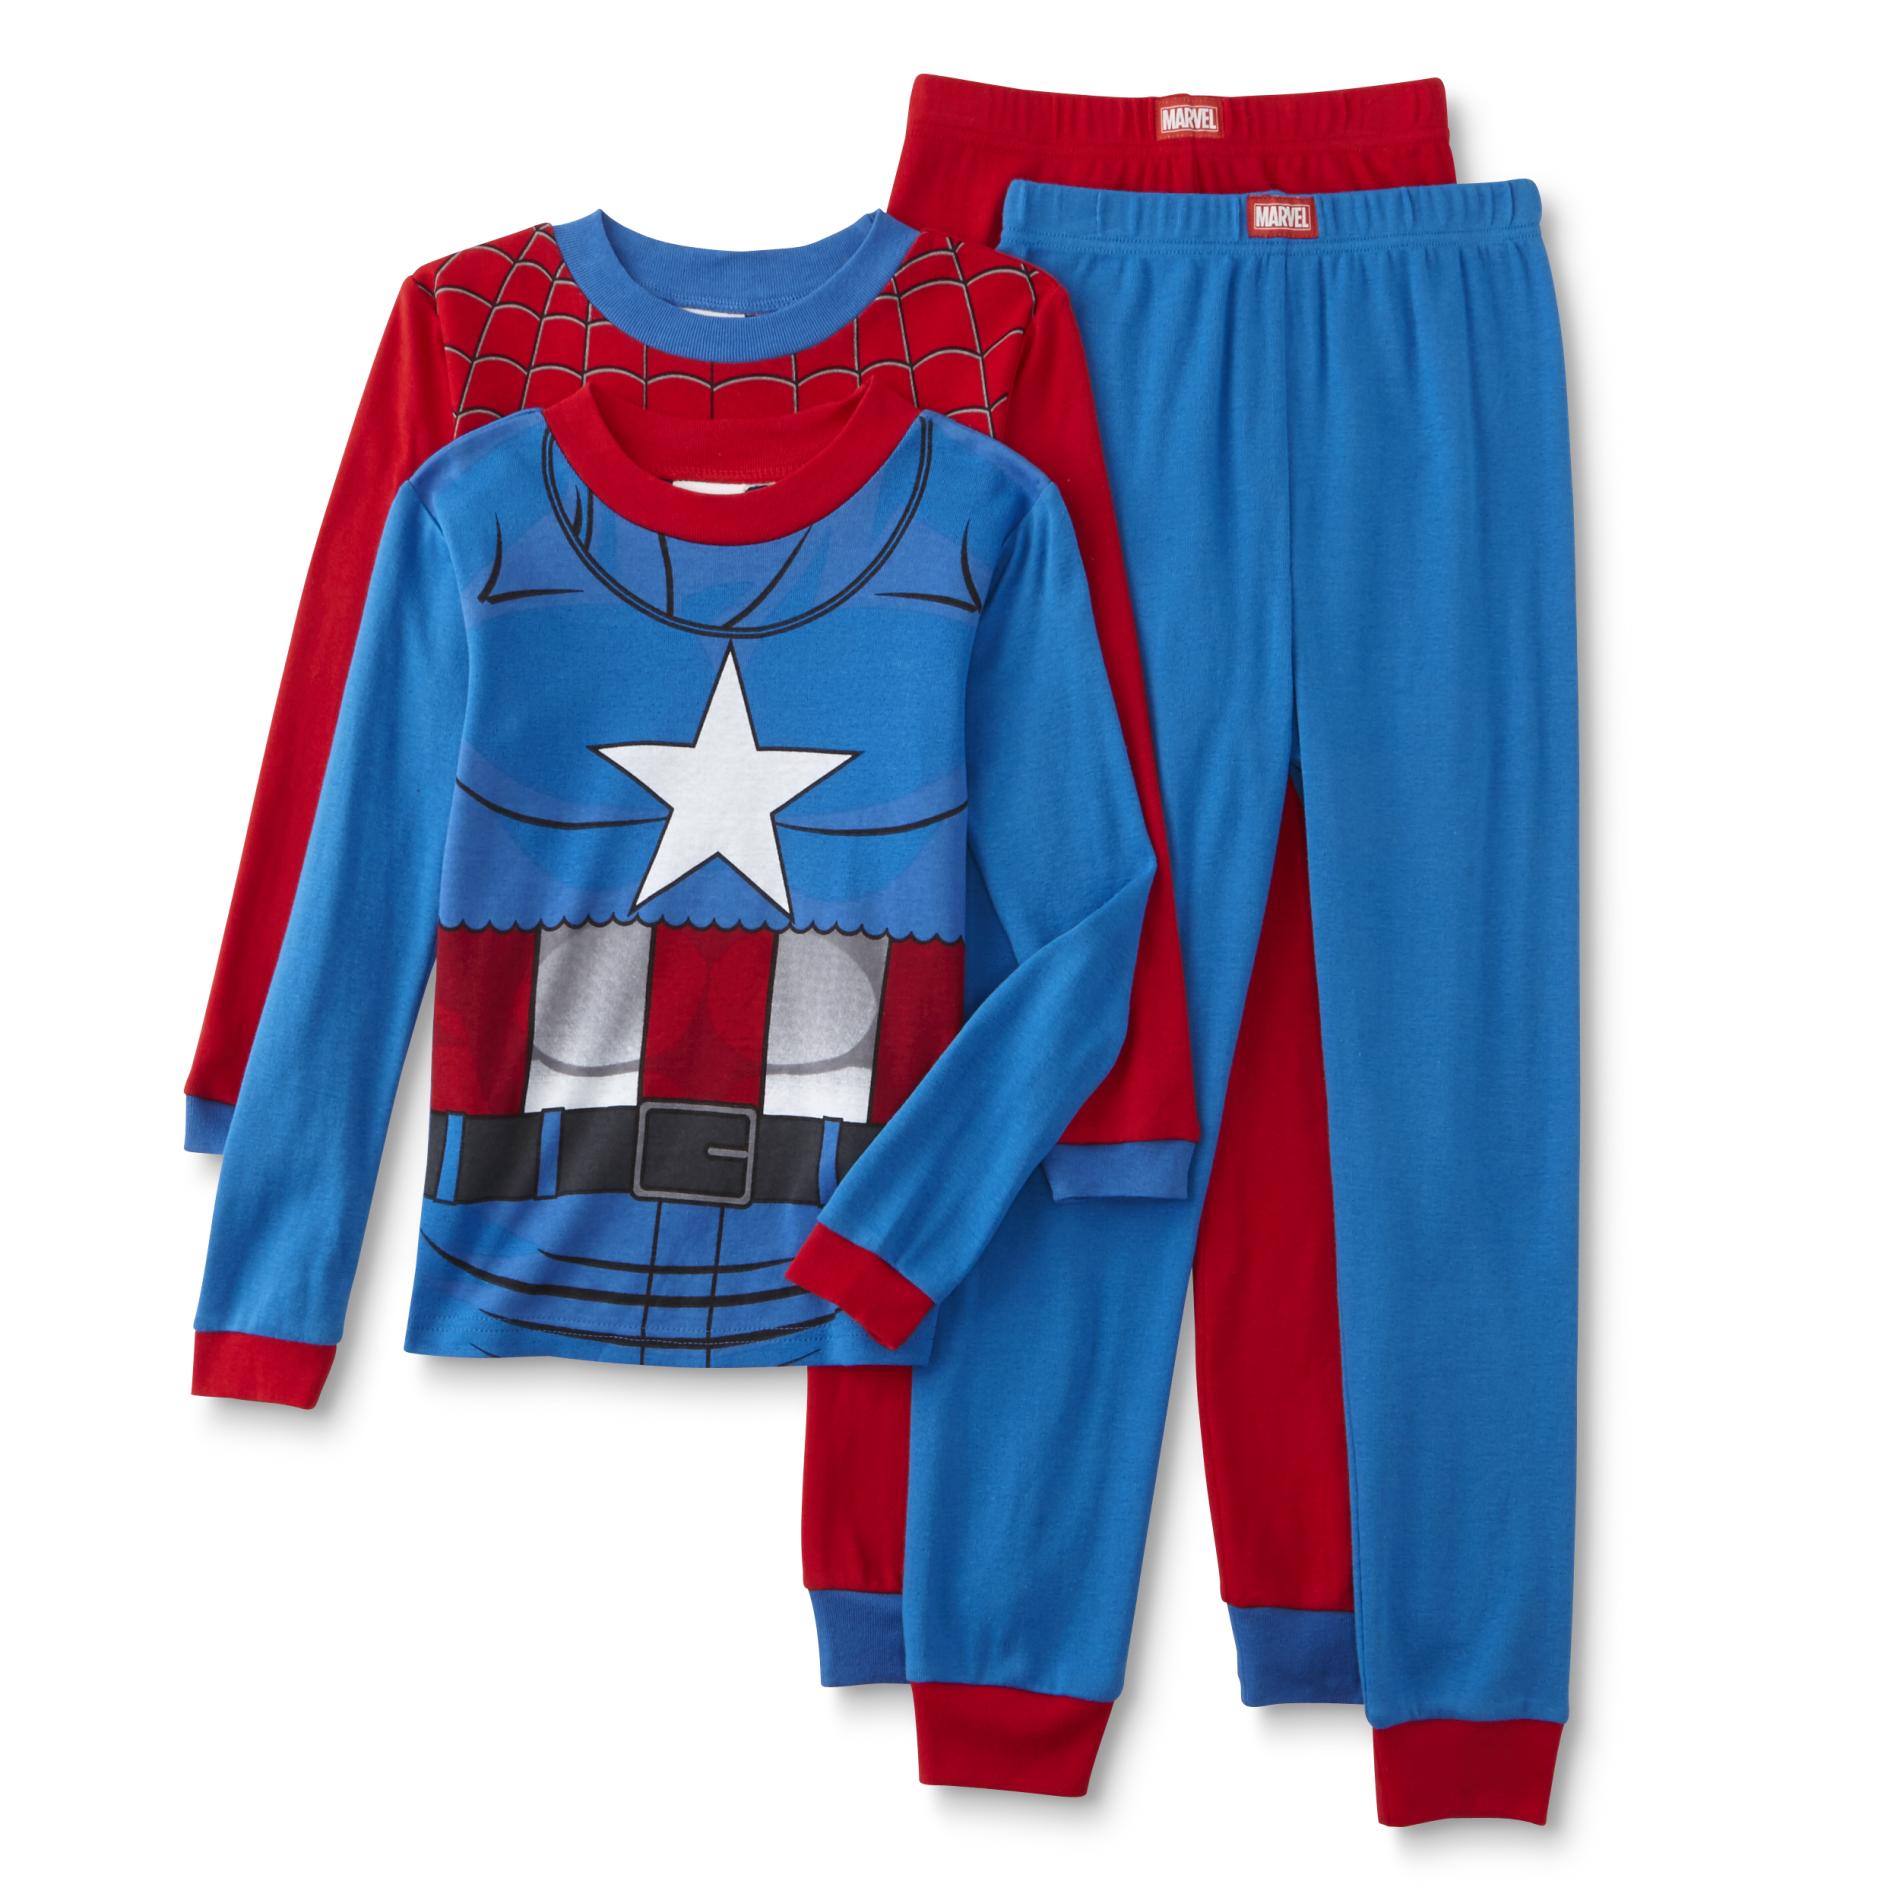 Marvel SpiderMan & Captain America Boy's 2Pairs Pajamas